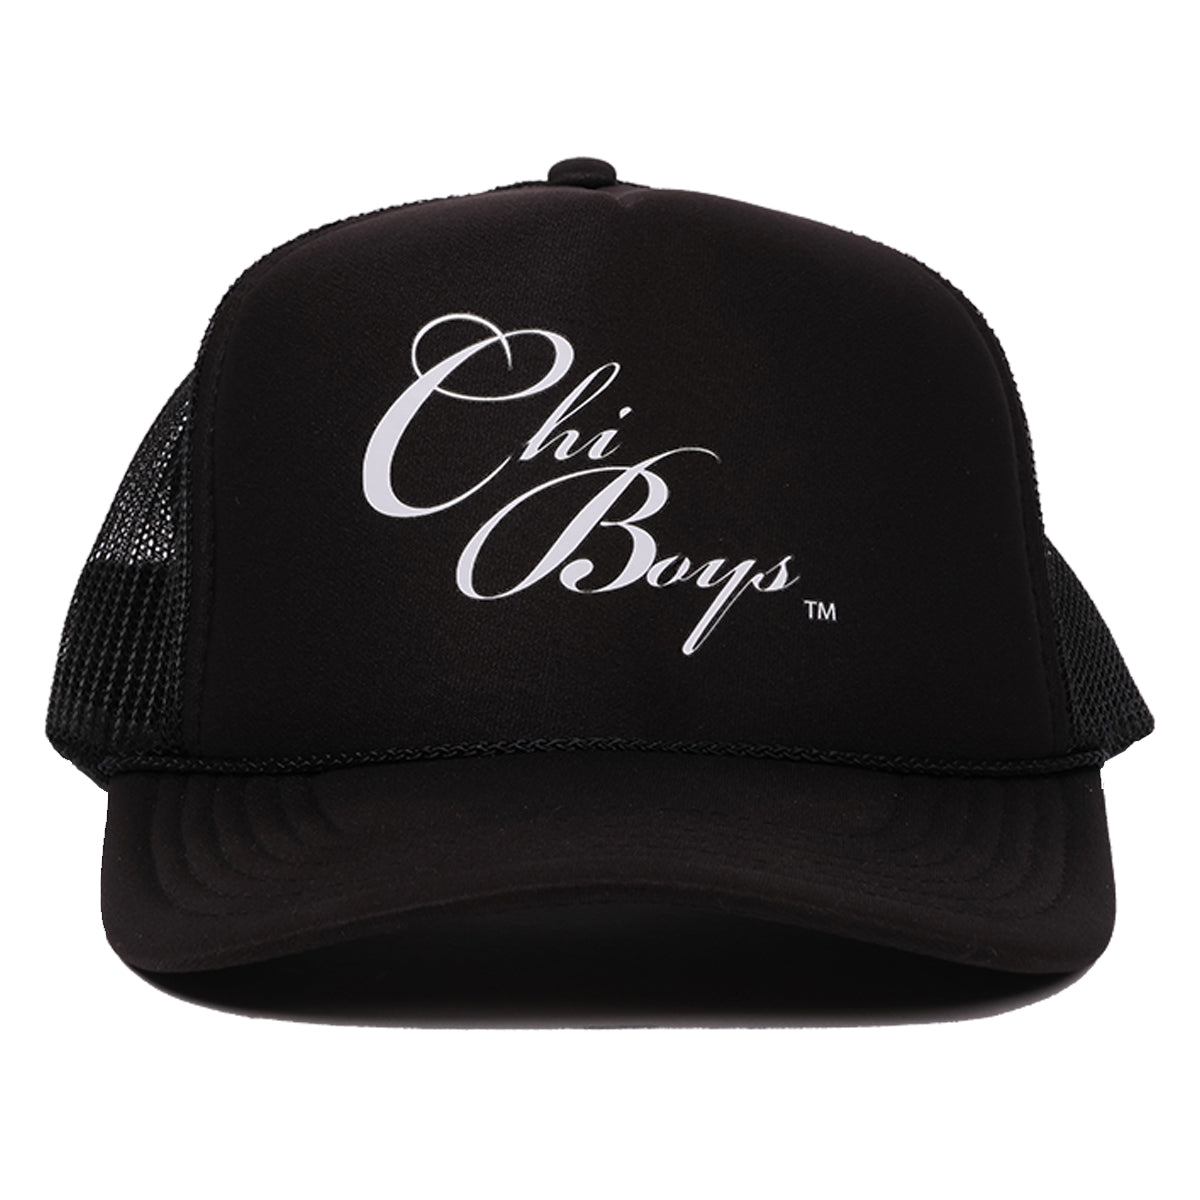 ChiBoys Logo Trucker Orignial